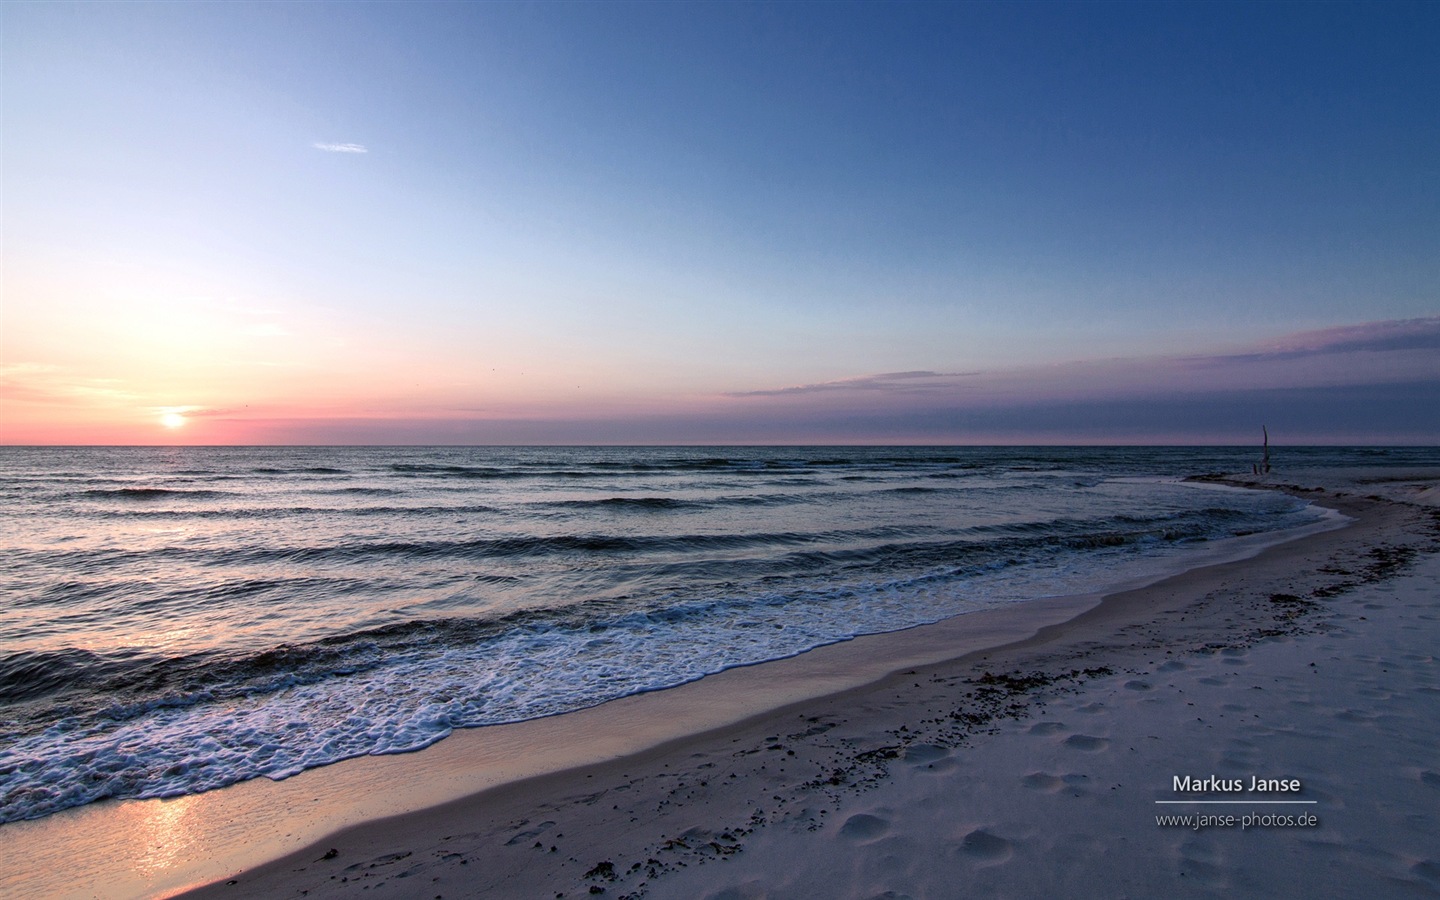 독일의 아름다운 해안 풍경, 윈도우 8의 HD 배경 화면 #14 - 1440x900